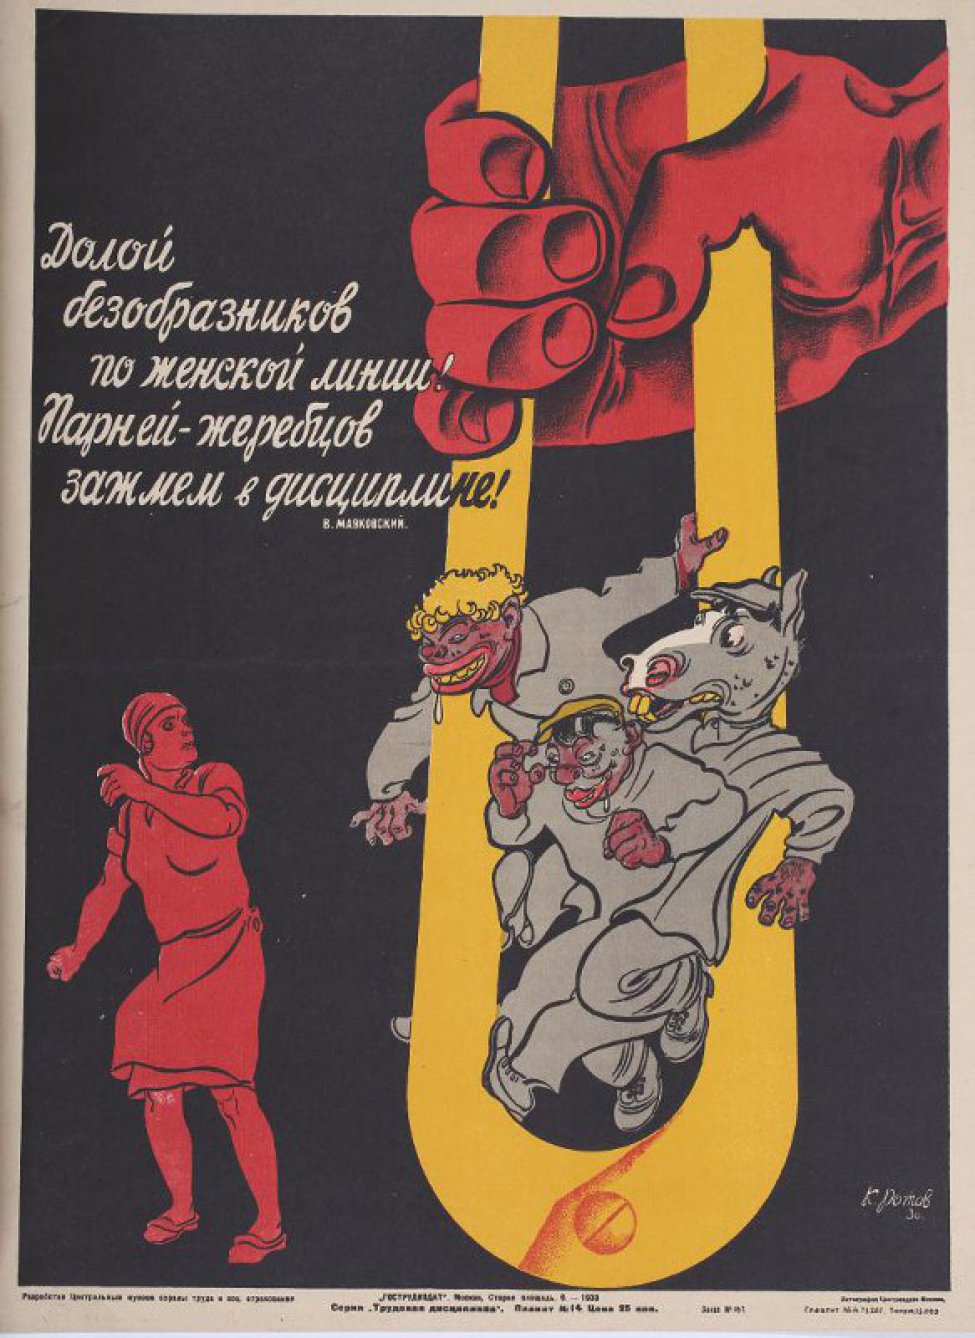 Изображена сильная красная рука, зажавшая три каррикатурные фигуры парней. Слева женщина. Общий фон черный.